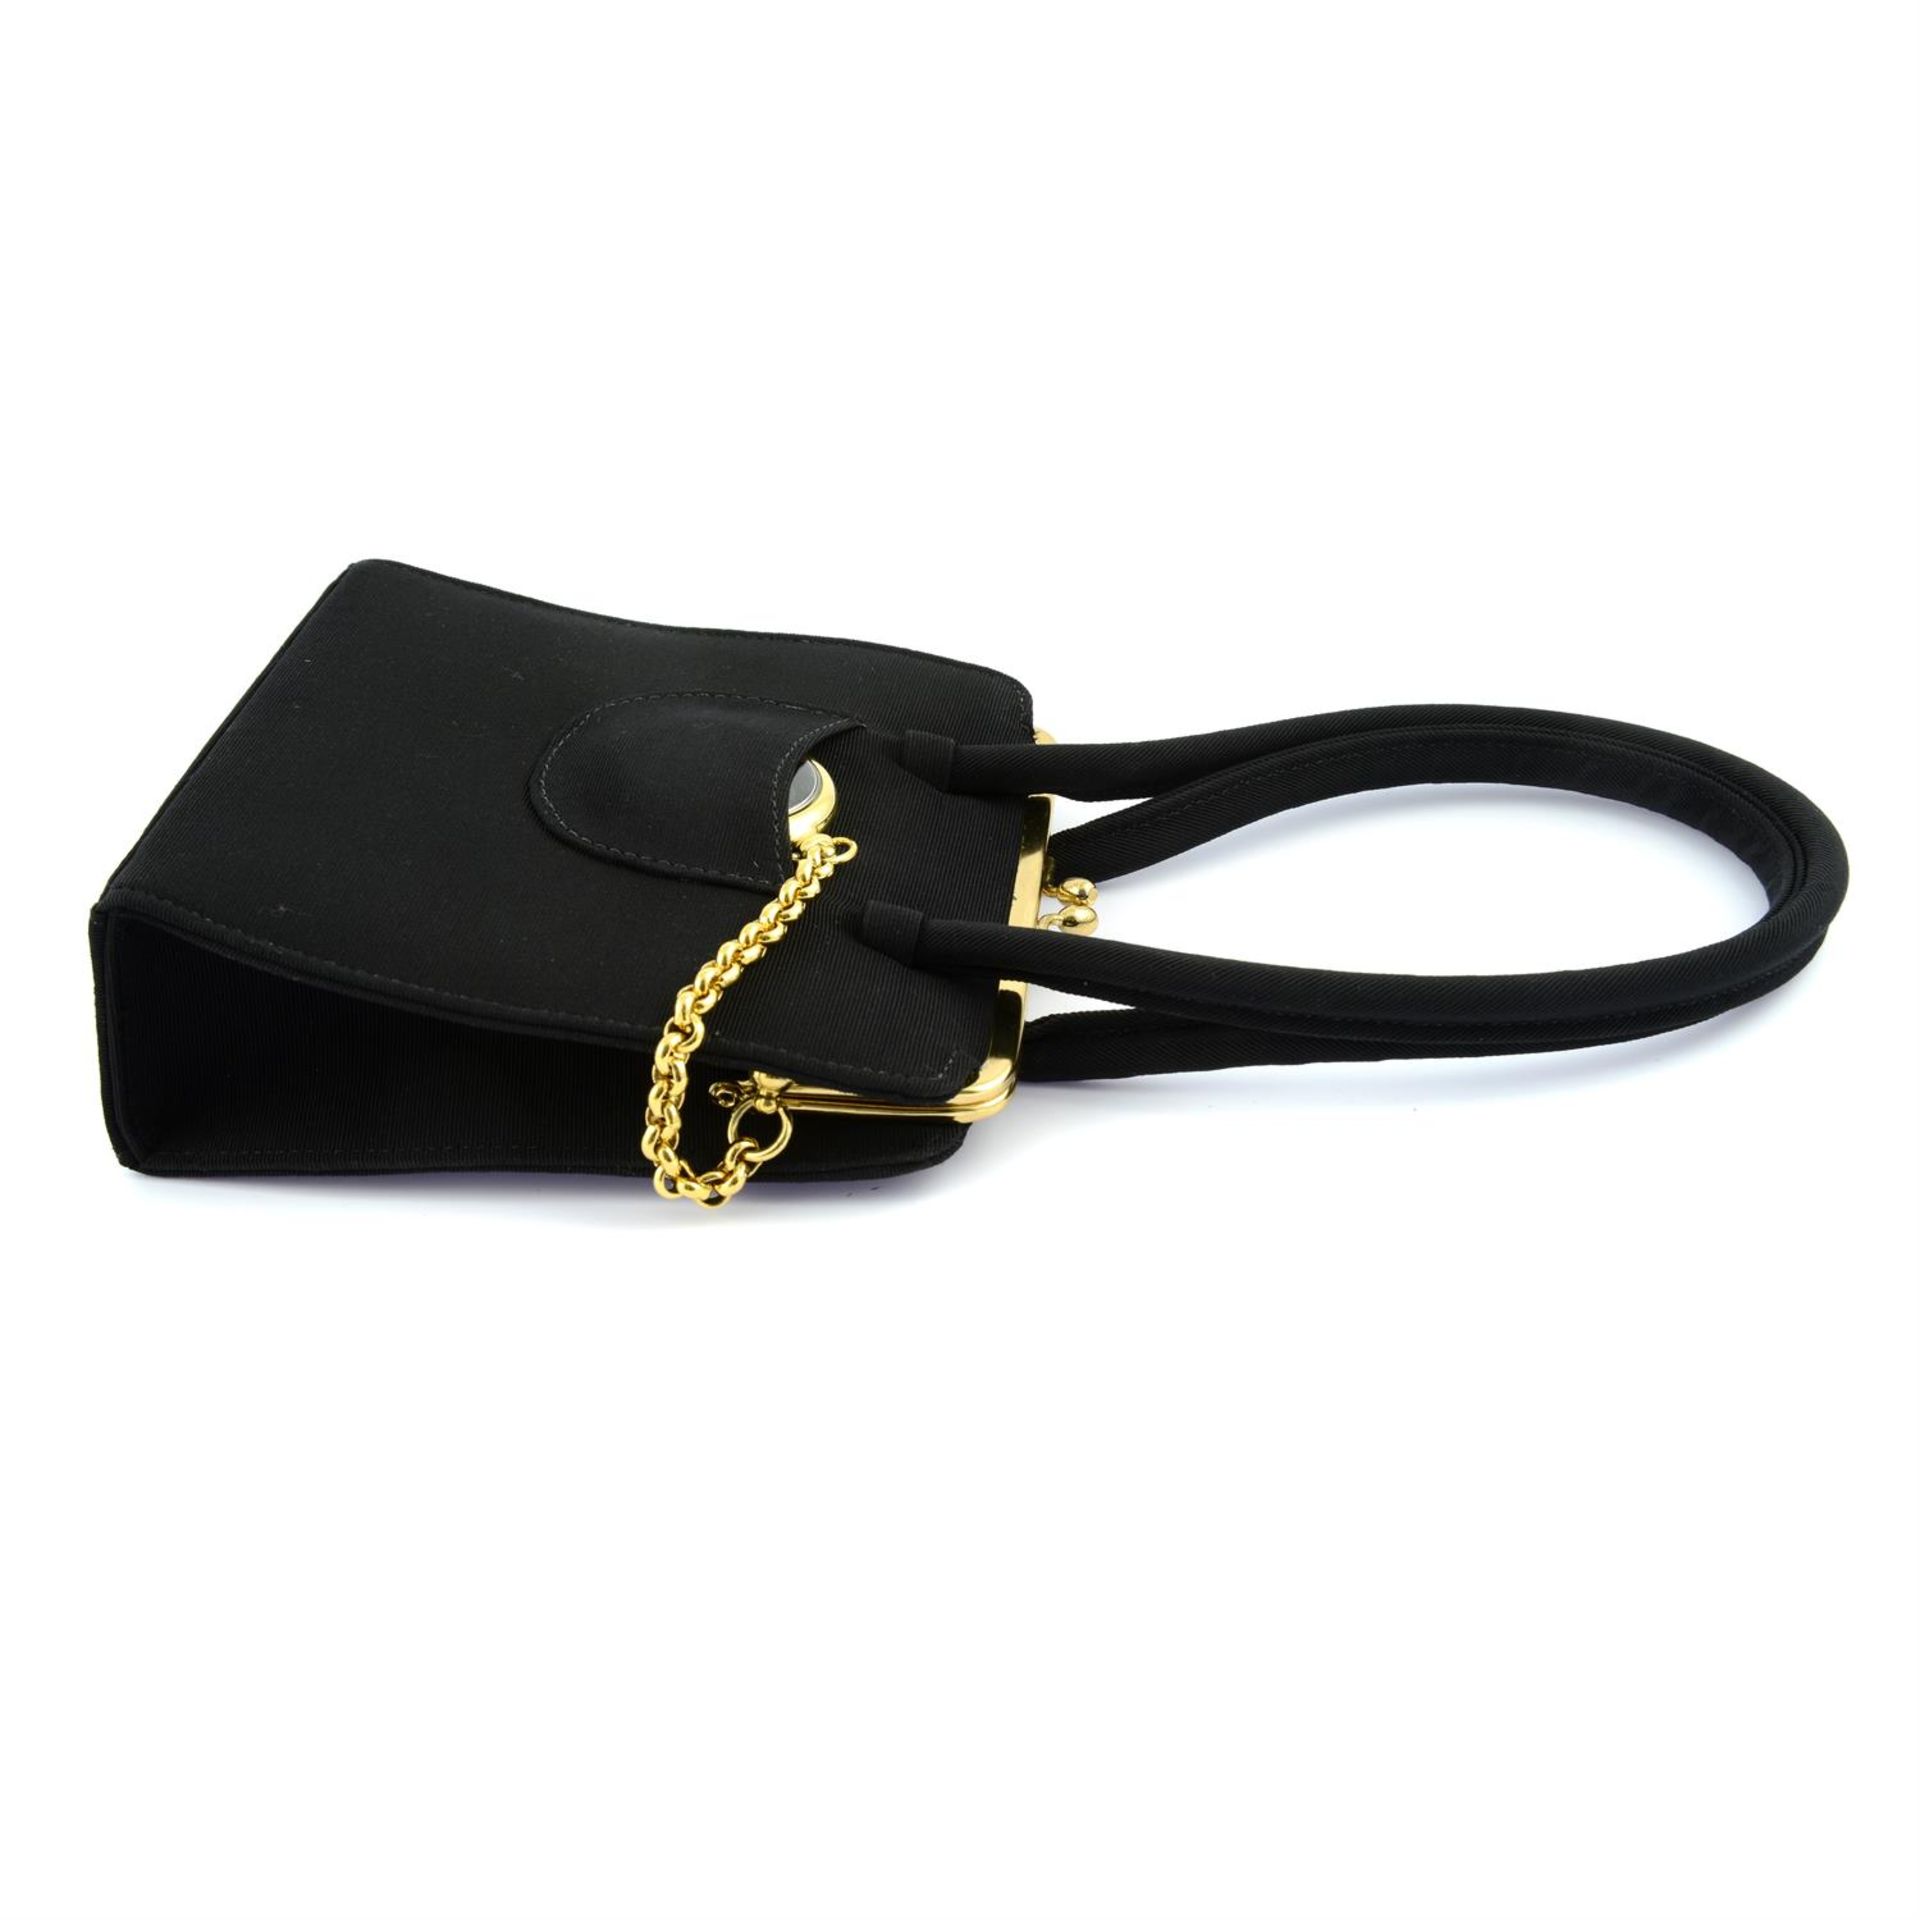 ANYA HINDMARCH - a black fabric handbag. - Image 3 of 6